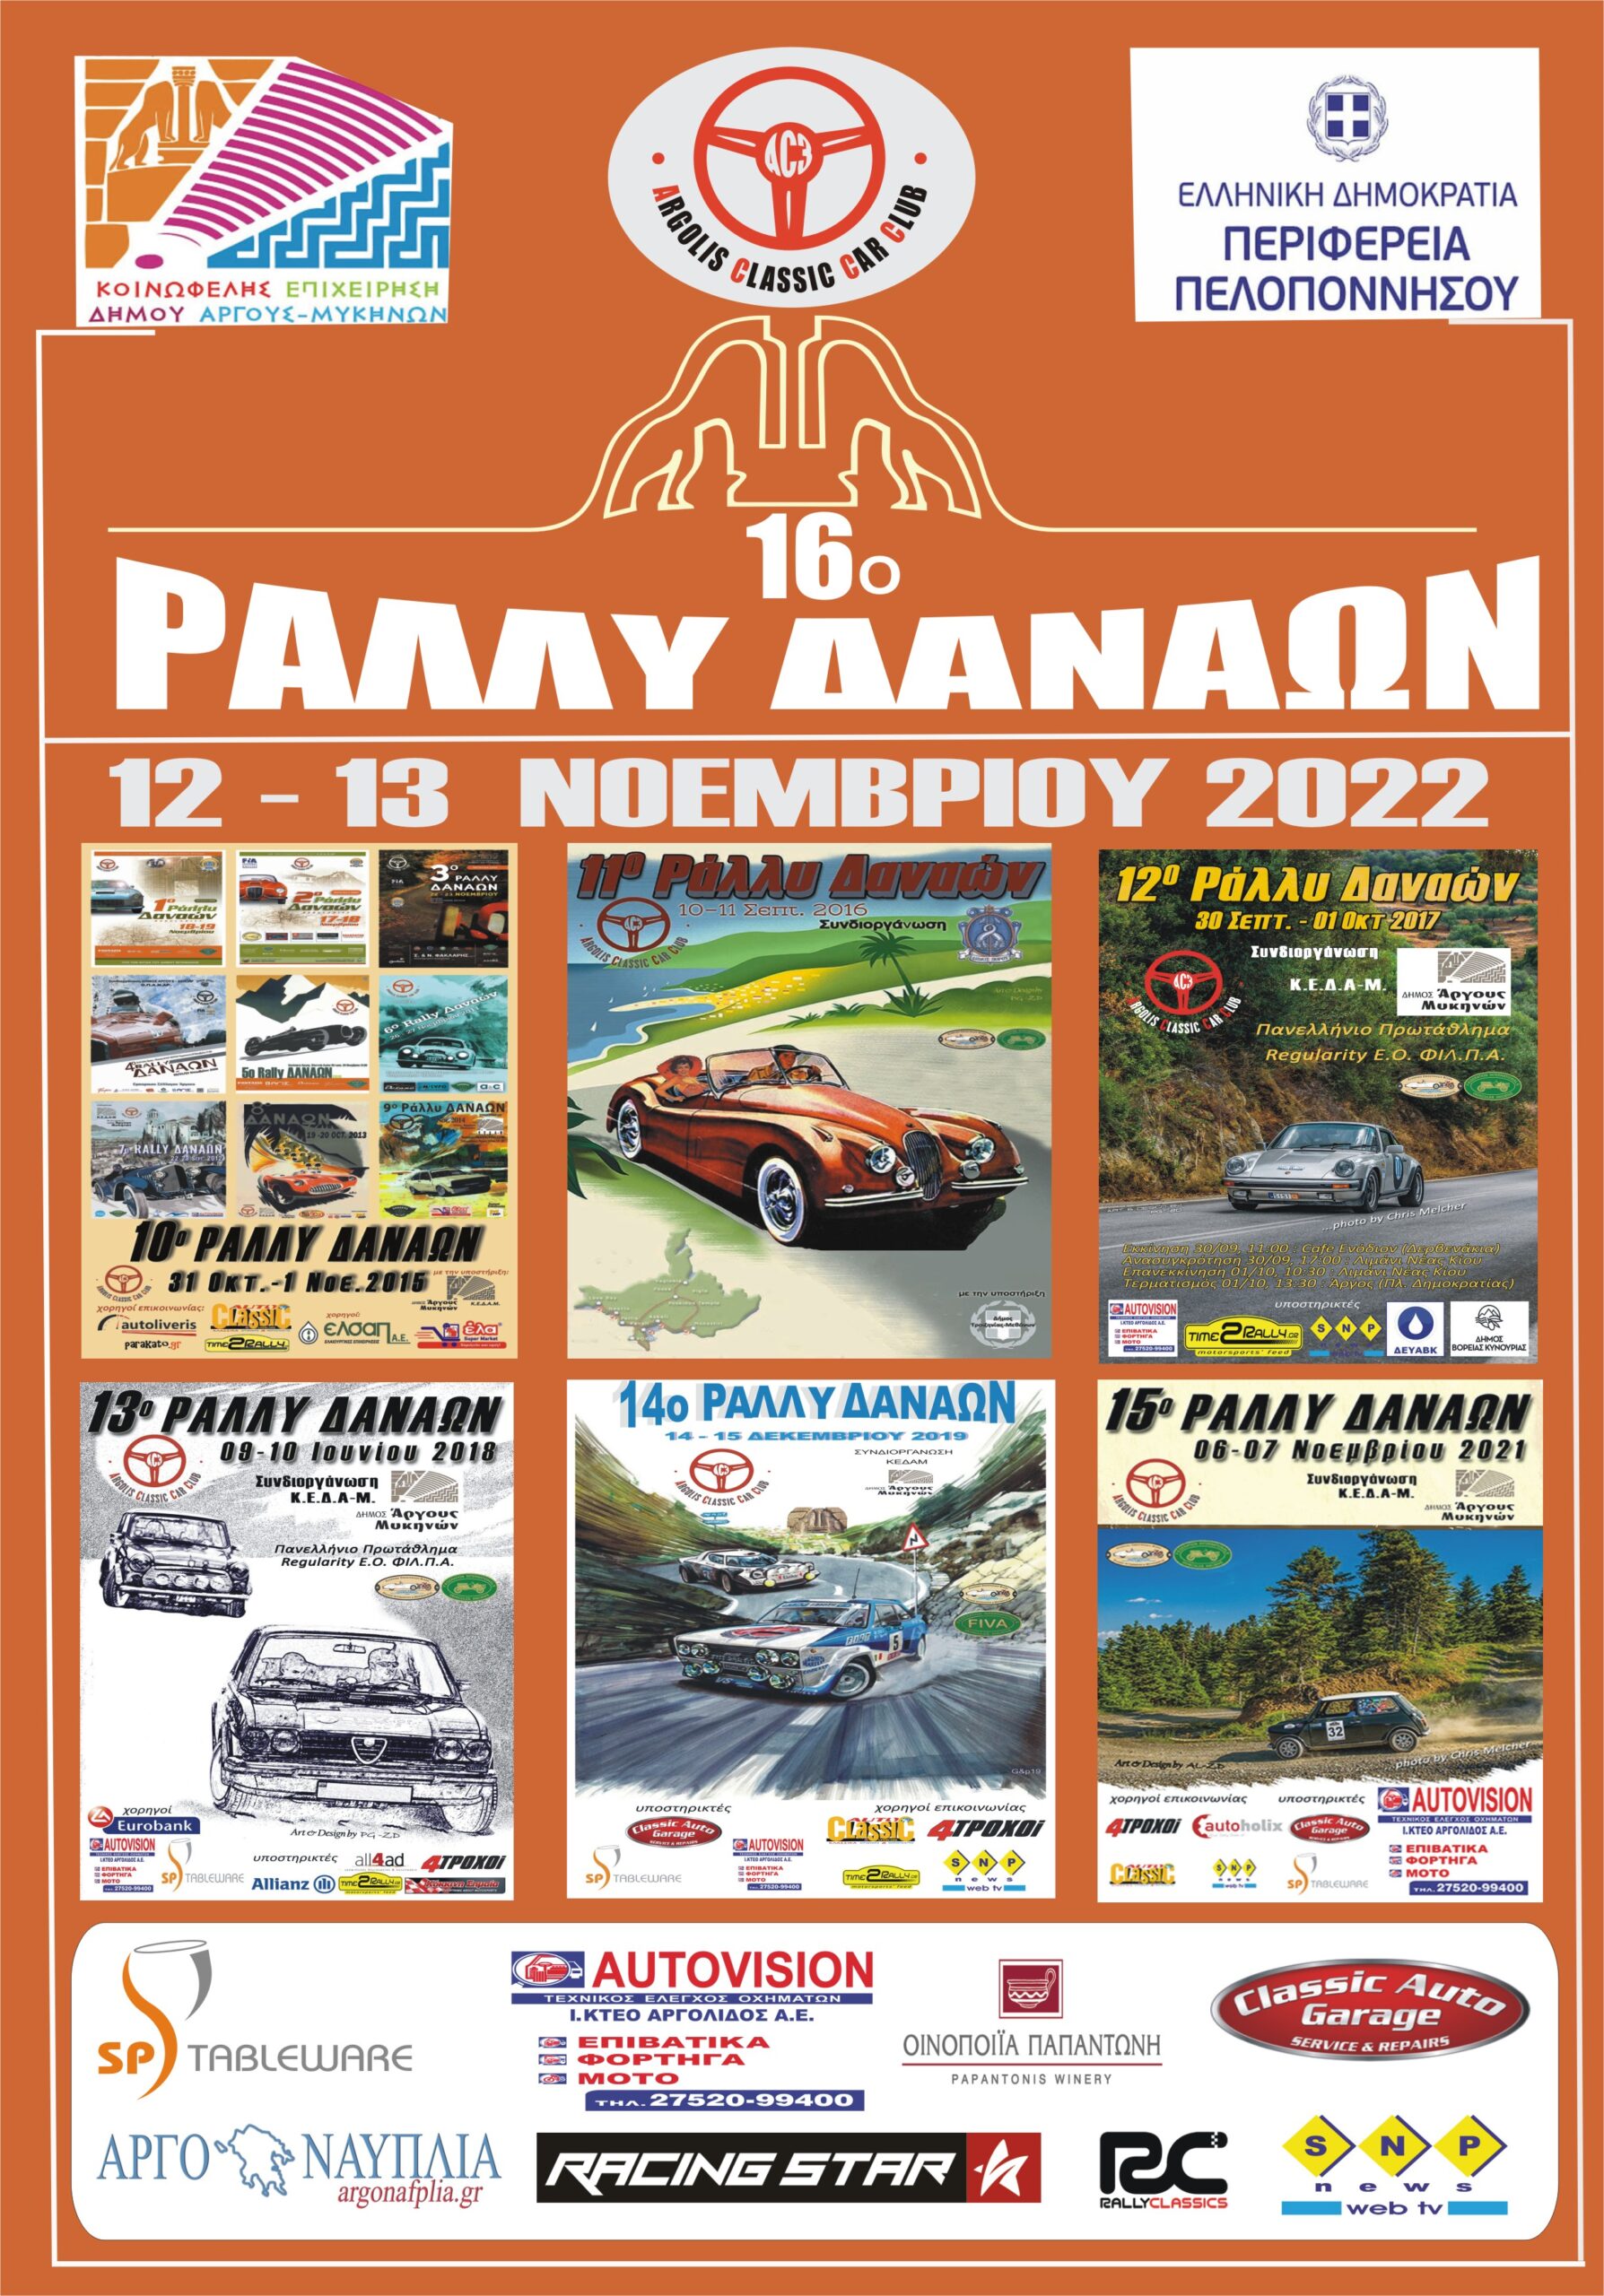 16o-rally-danaon-2022-poster-new